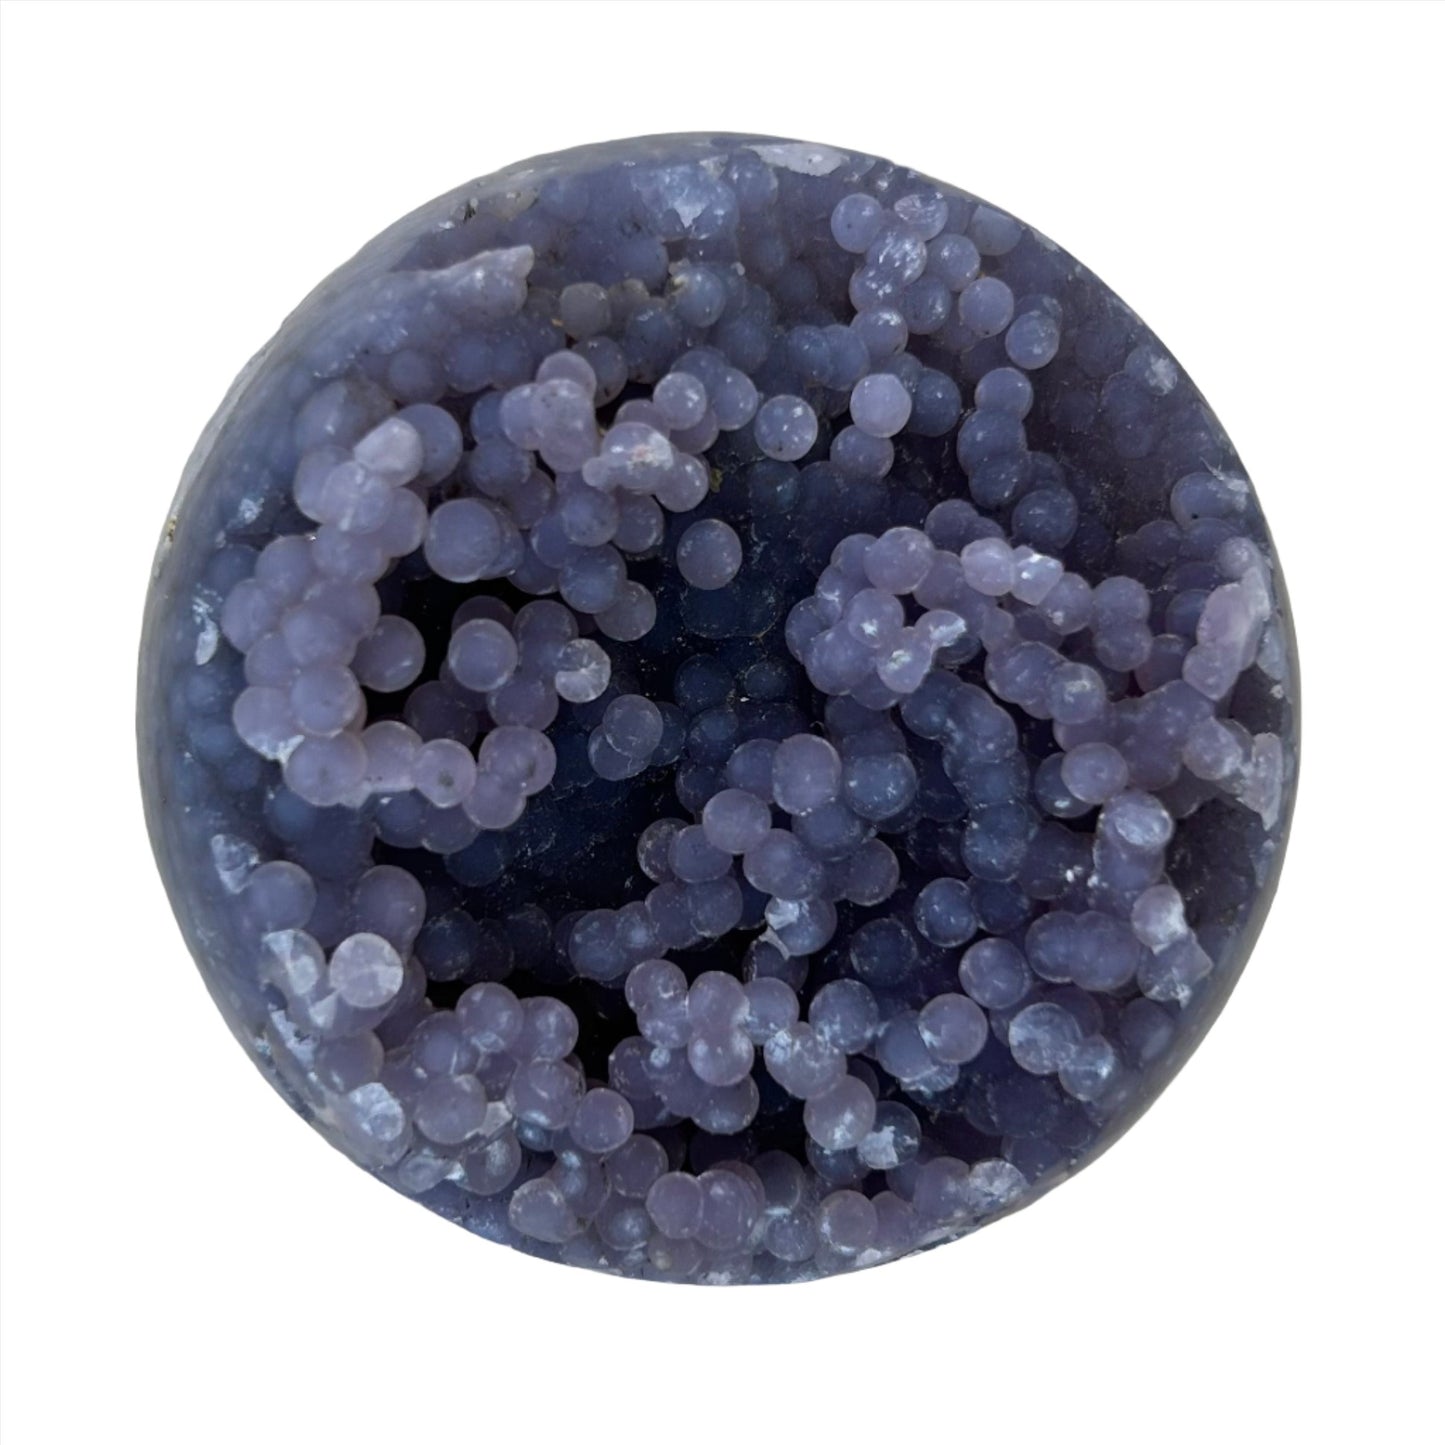 Grape Agate Sphere 233g